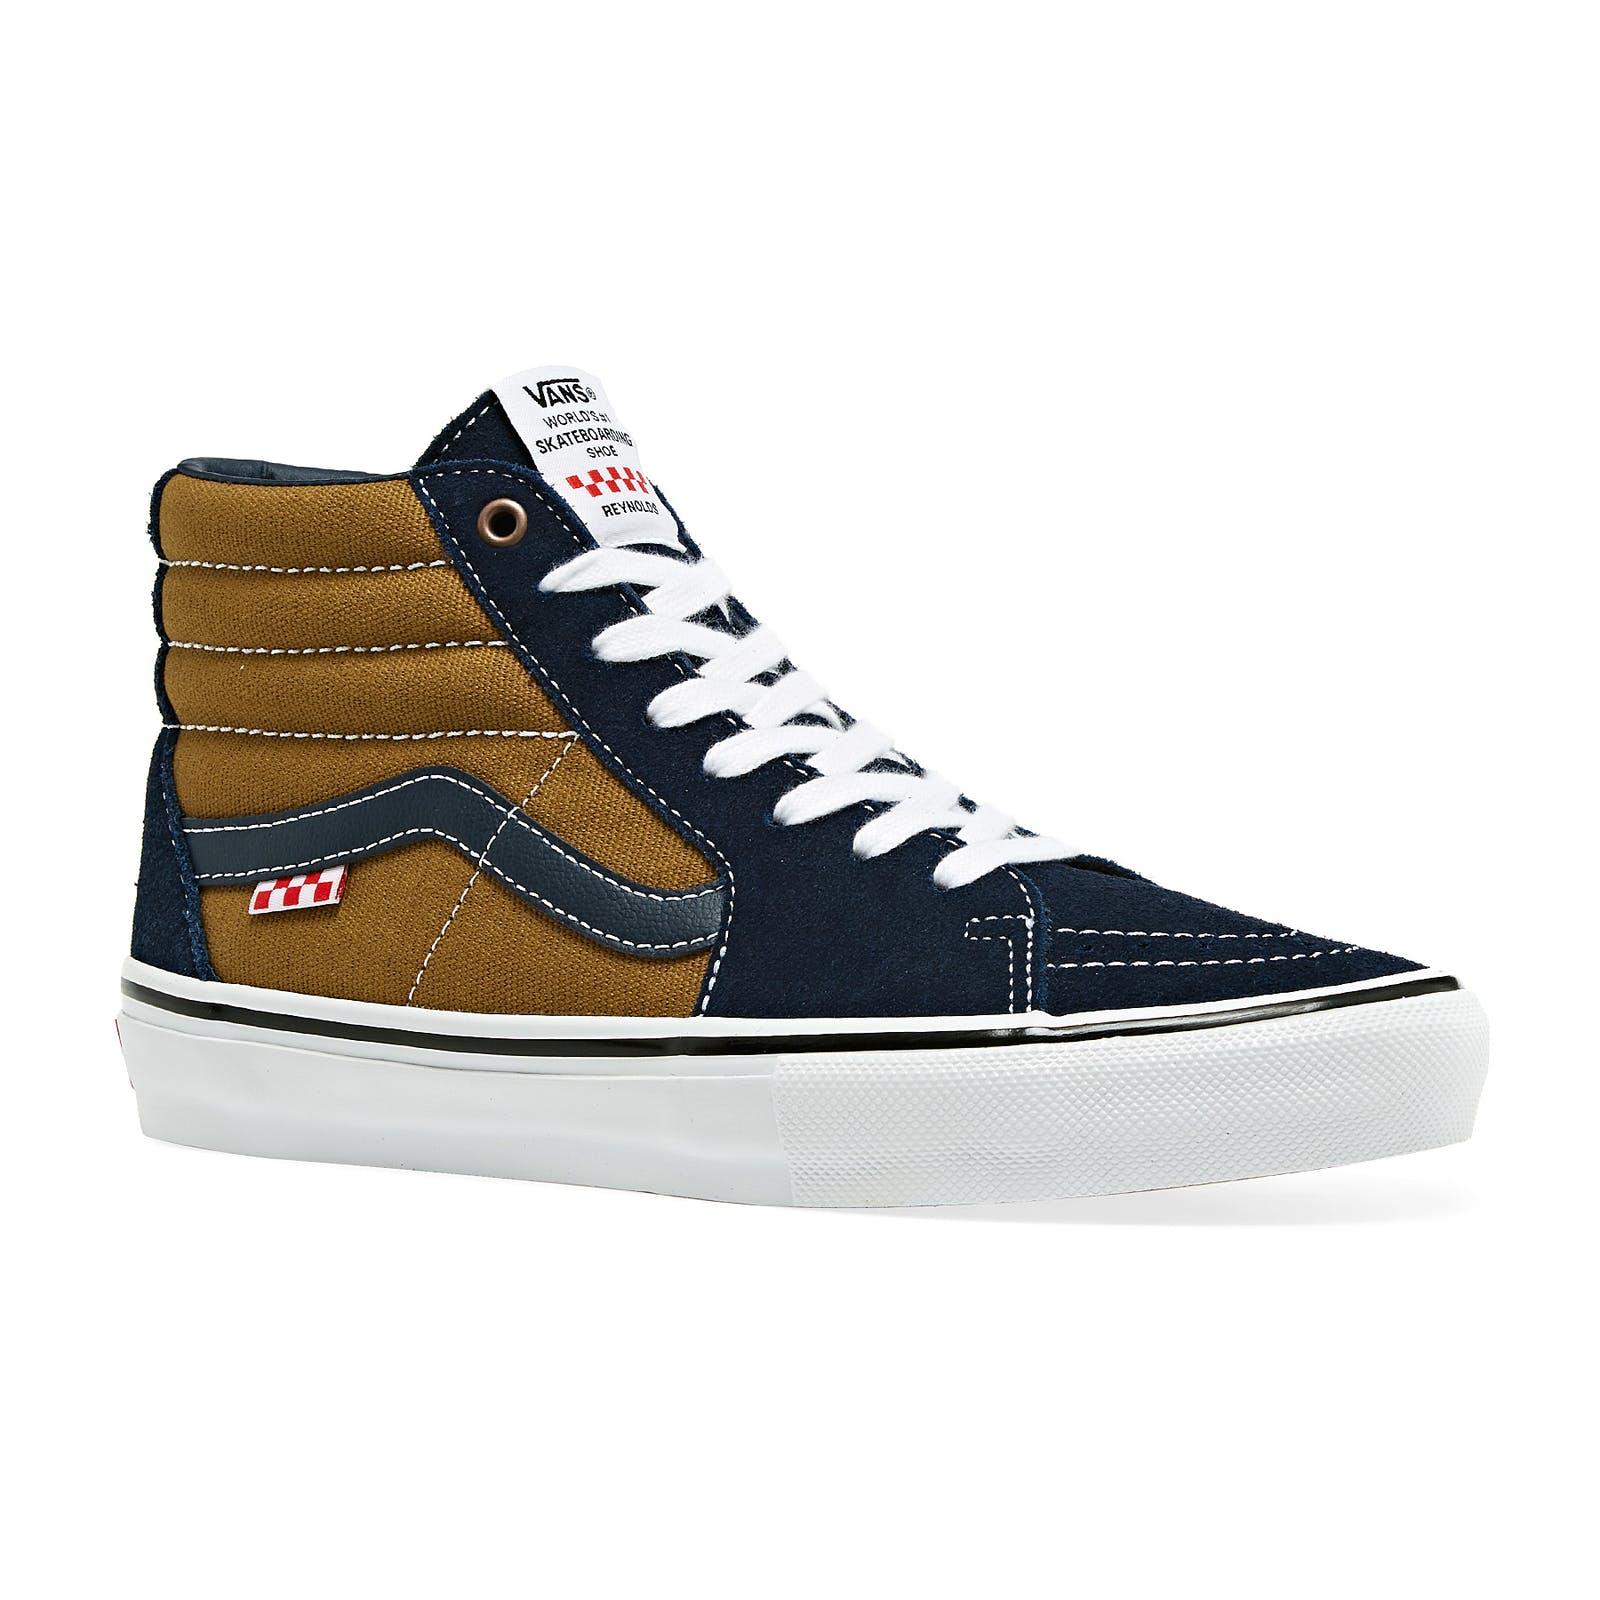 Sapatos Vans Skate Sk8 Hi (Reynolds)Navy Golden Brown | Homem|Mulher Sapatilhas